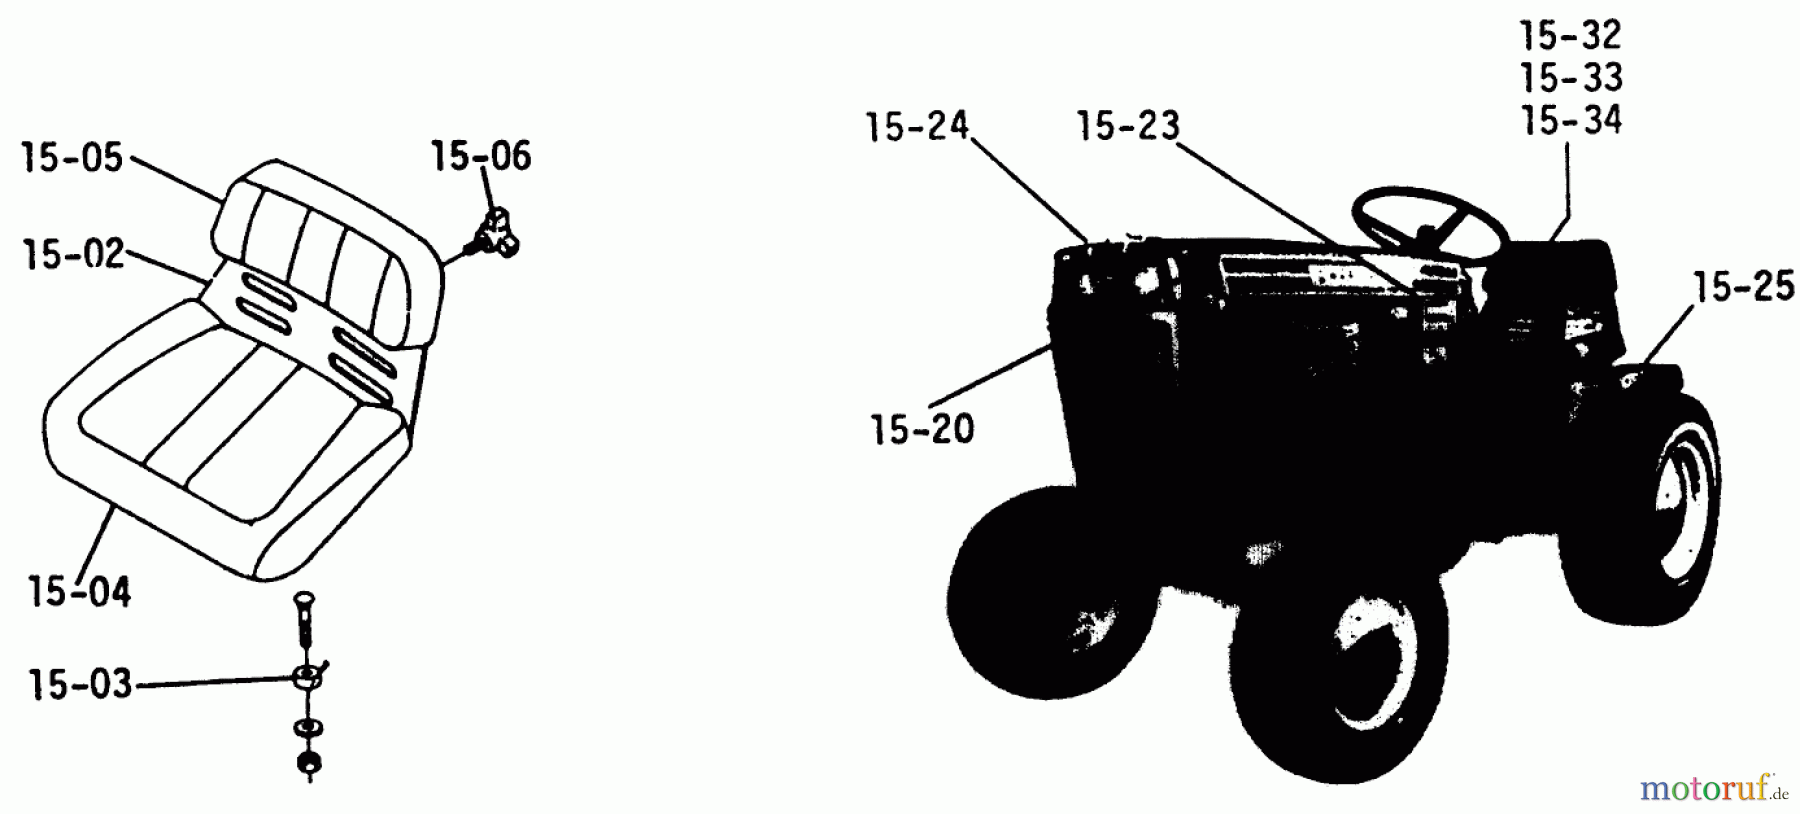  Toro Neu Mowers, Lawn & Garden Tractor Seite 1 1-0310 - Toro Raider 12 Tractor, 1971 SEATS, DECALS, MISC. TRIM (PLATE 15.1)